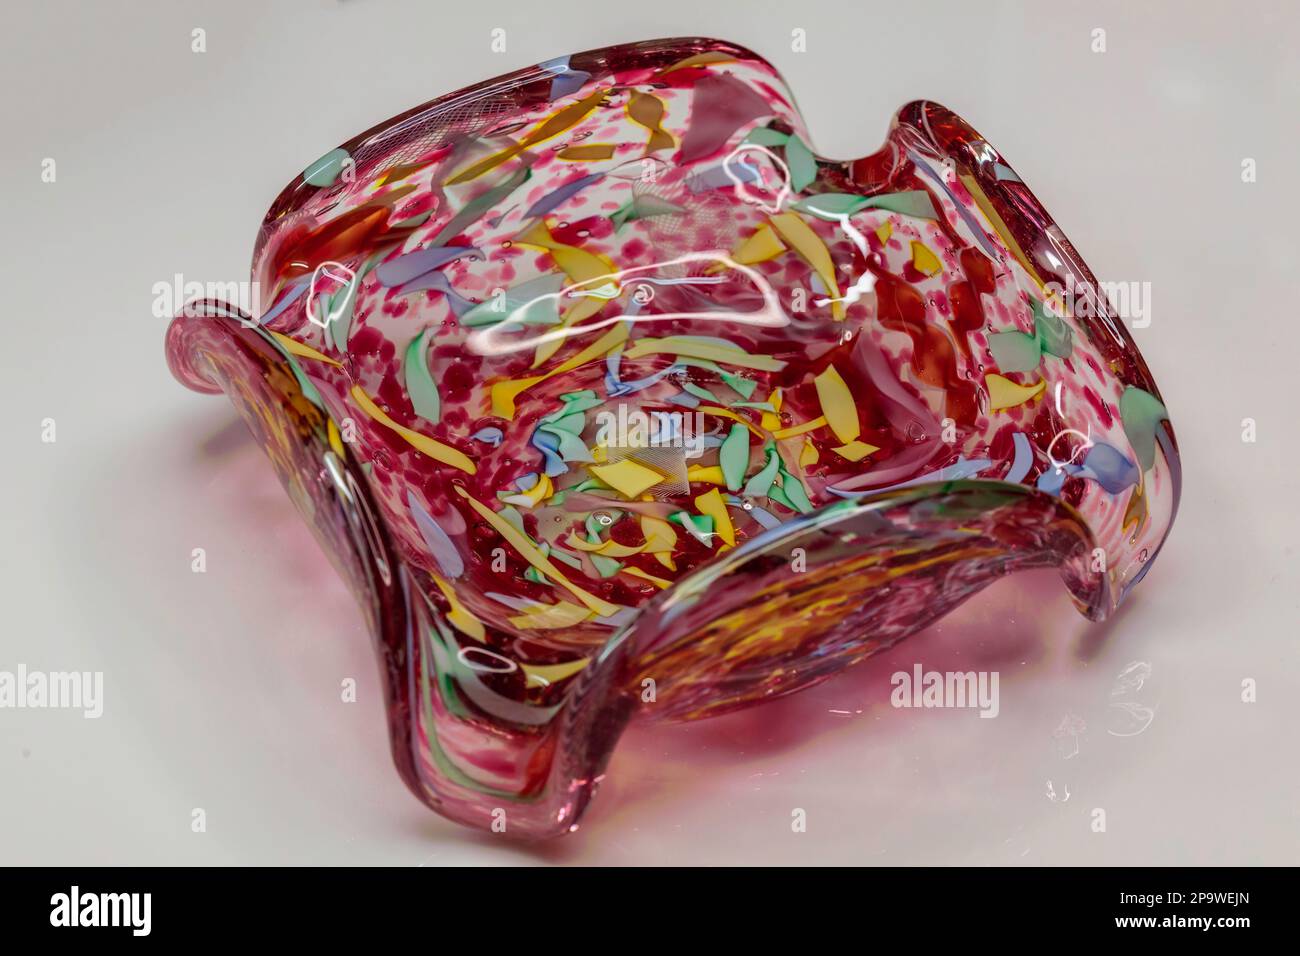 vue latérale d'un plat de bonbons en verre soufflé rose Banque D'Images